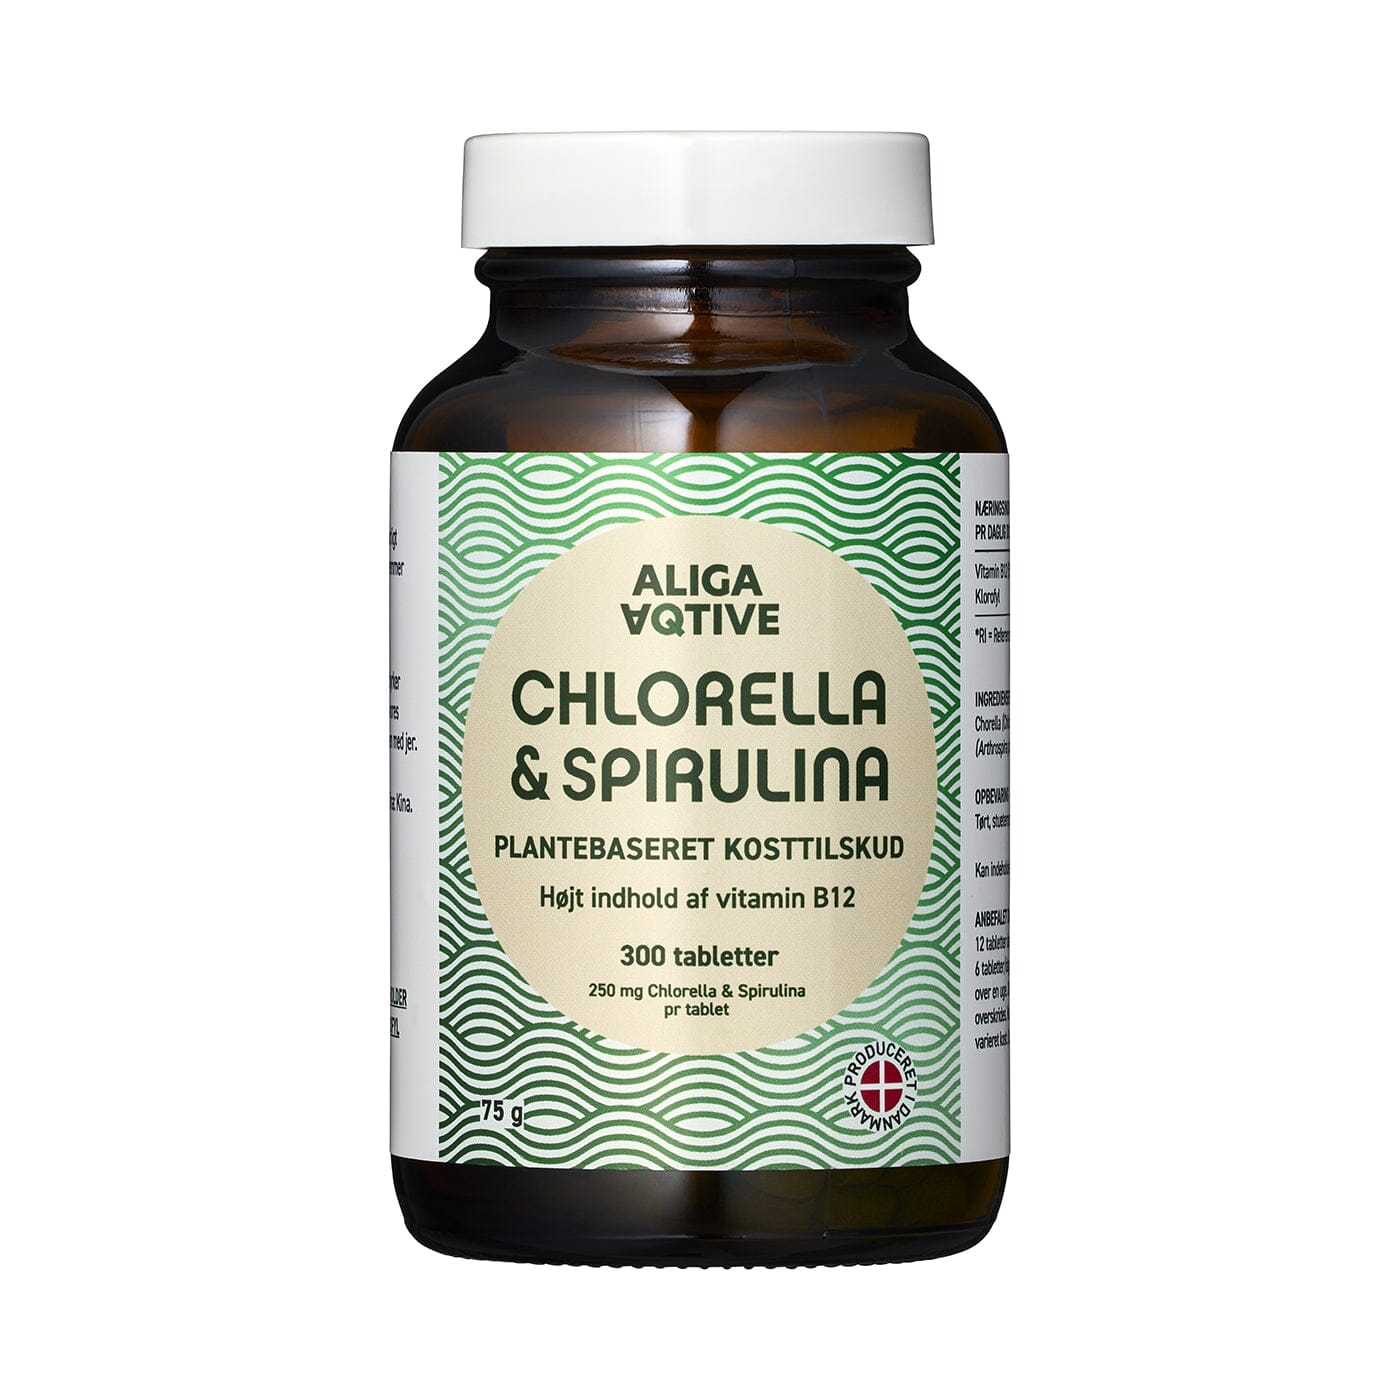 Aliga Chlorella & Spirulina tabletter